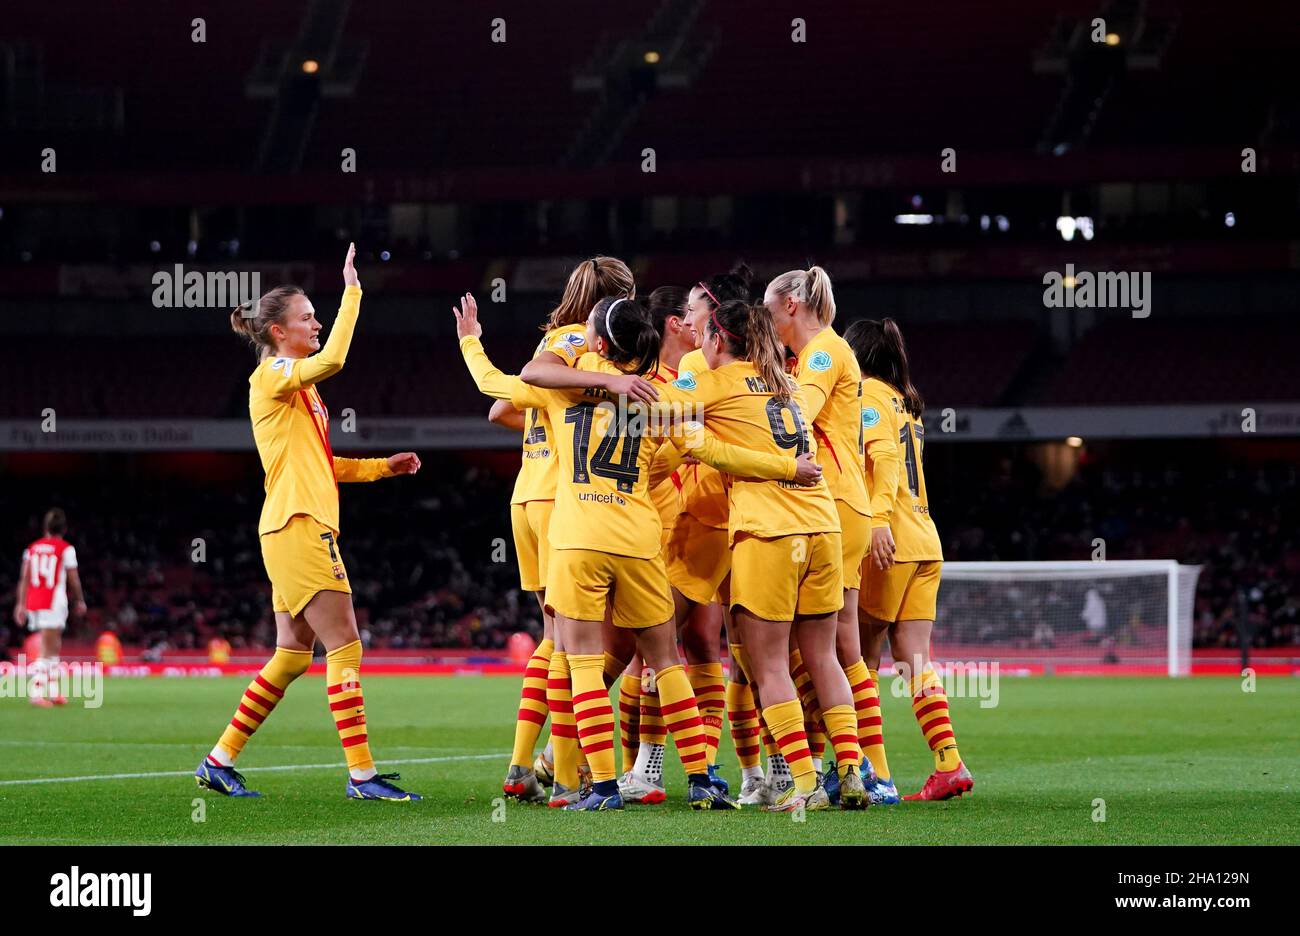 El barcelonés Jenifer Hermoso celebra el cuarto gol de su lado durante el partido de la Liga de Campeones Femenina de la UEFA, Grupo C, en el estadio Emirates de Londres. Fecha de la foto: Jueves 9 de diciembre de 2021. Foto de stock